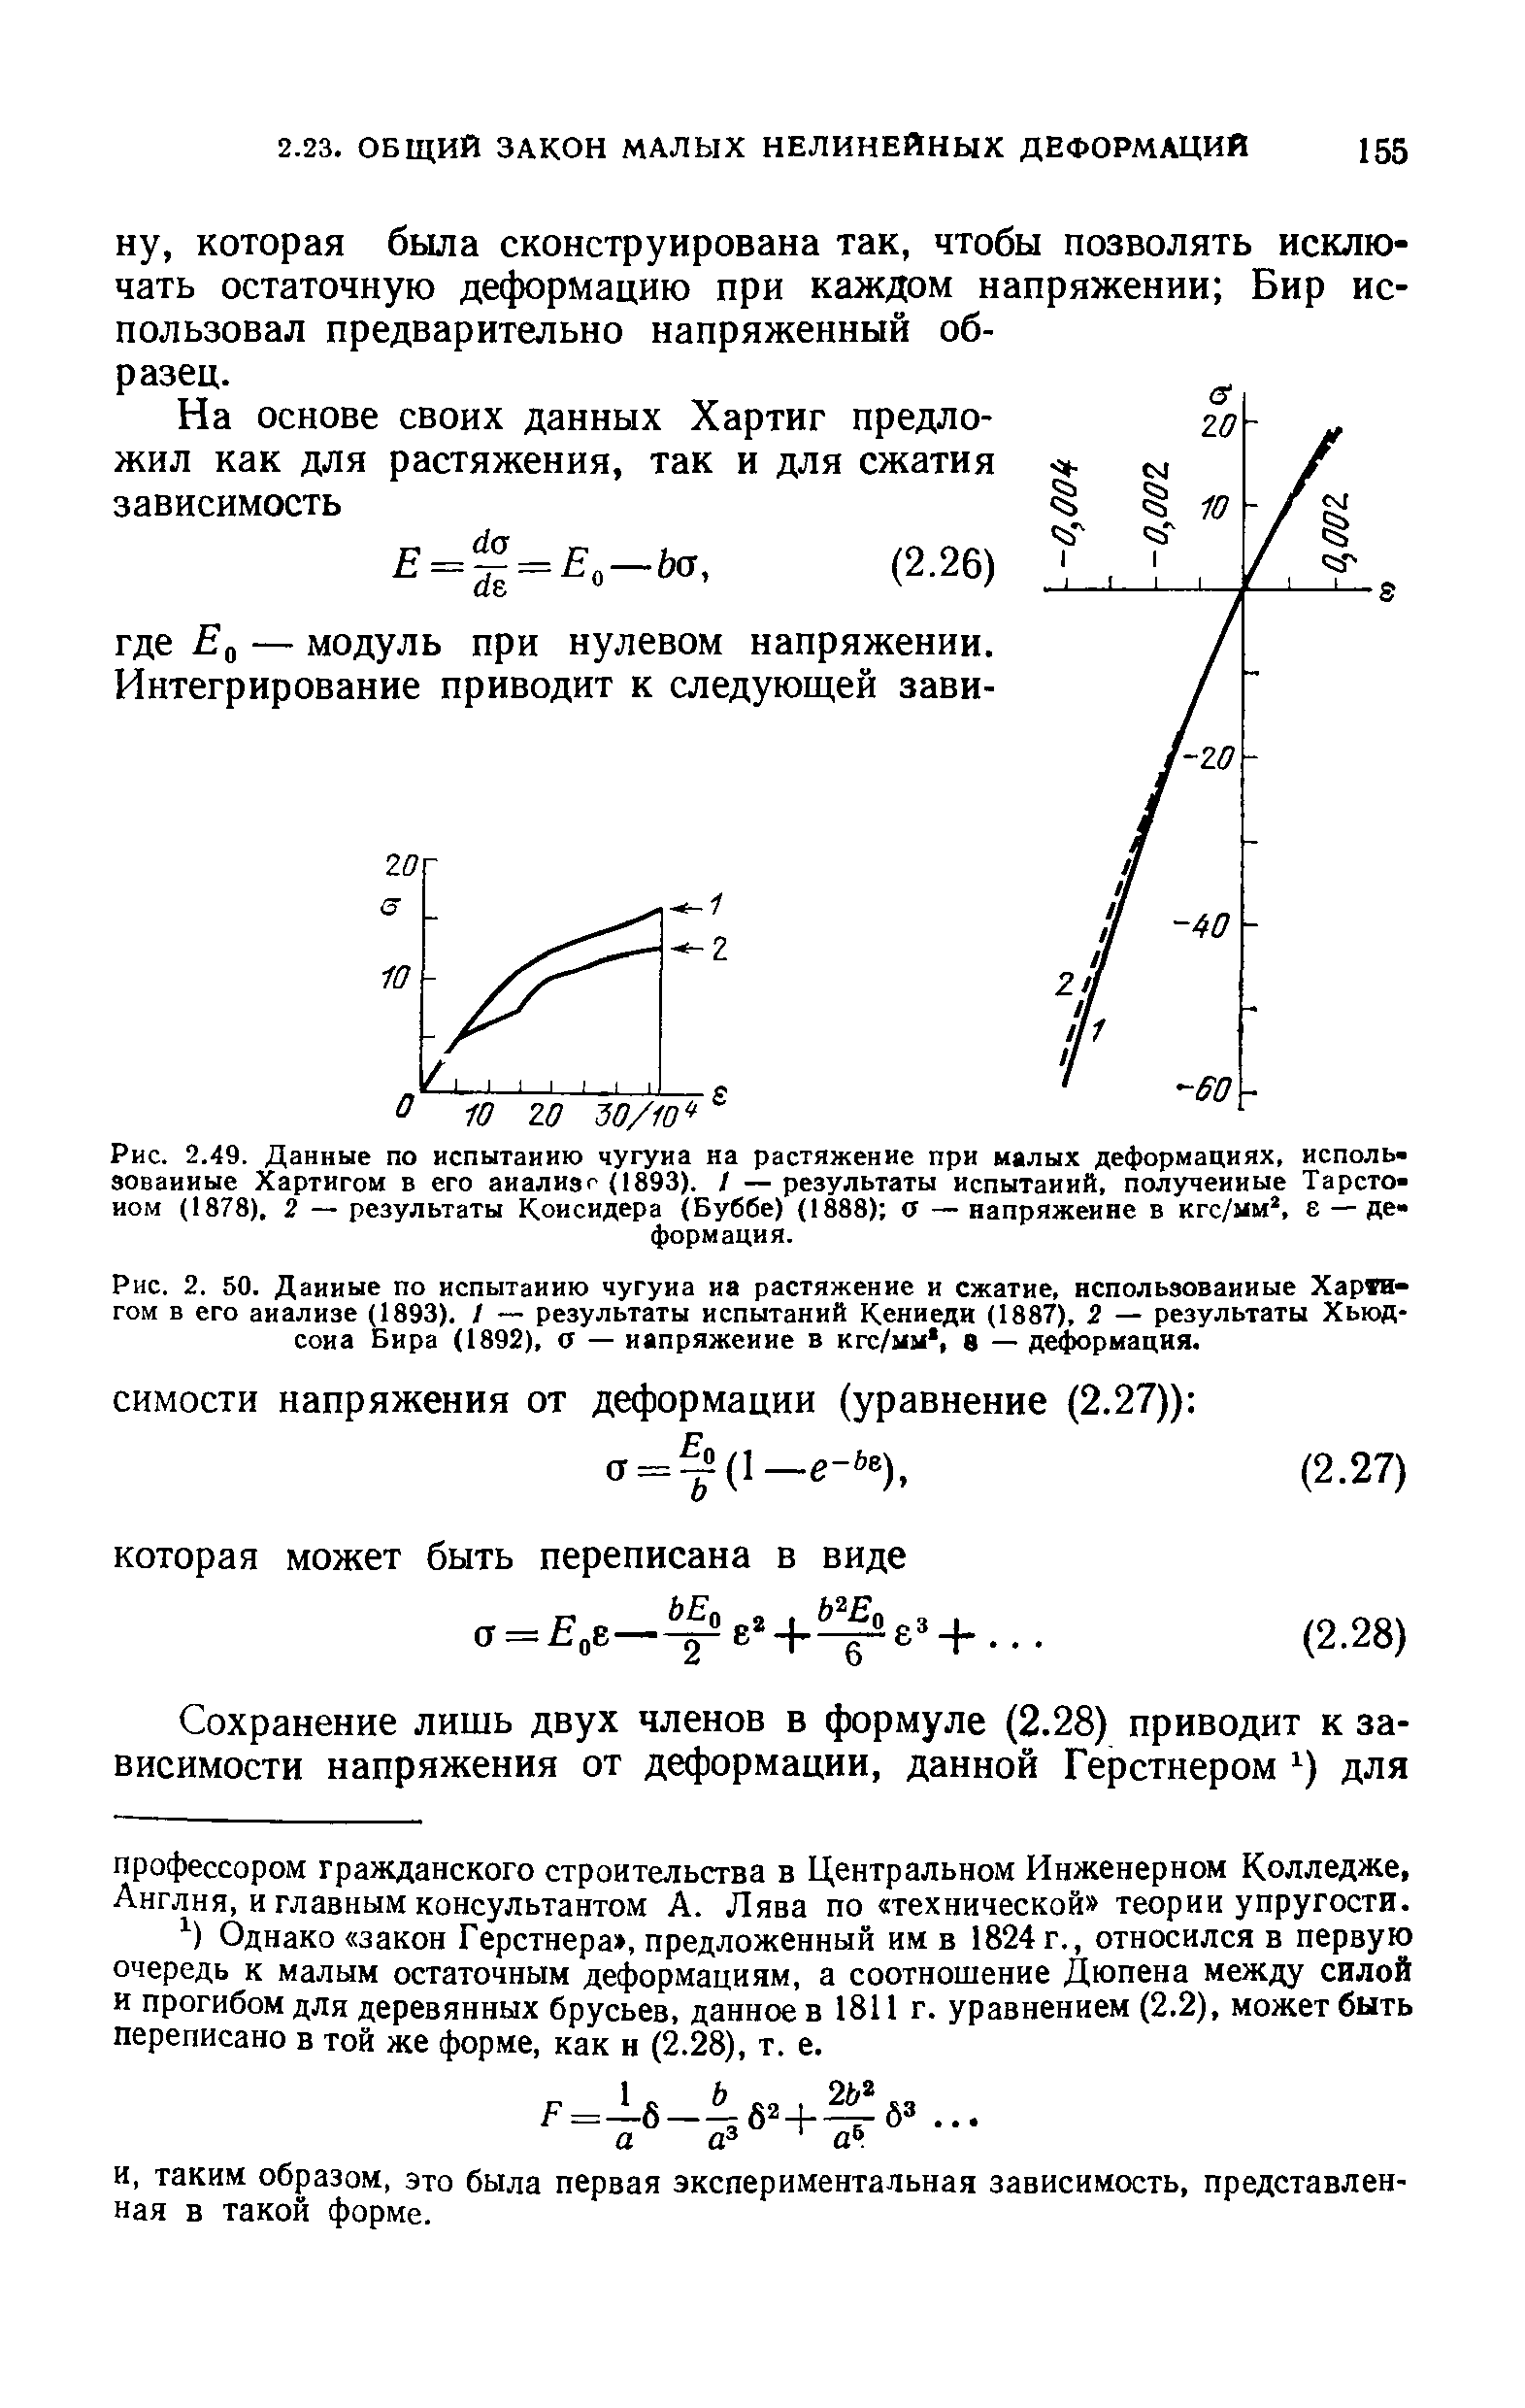 Рис. 2. 50. Данные по <a href="/info/442009">испытанию чугуна</a> на растяжение и сжатие, использованные Харта-гом в его анализе (1893). / — <a href="/info/677333">результаты испытаний</a> Кеннеди (1887), 2 — результаты Хьюд-сона Бира (1892), а — напряжение в кгс/мм, в — де( рмация.
